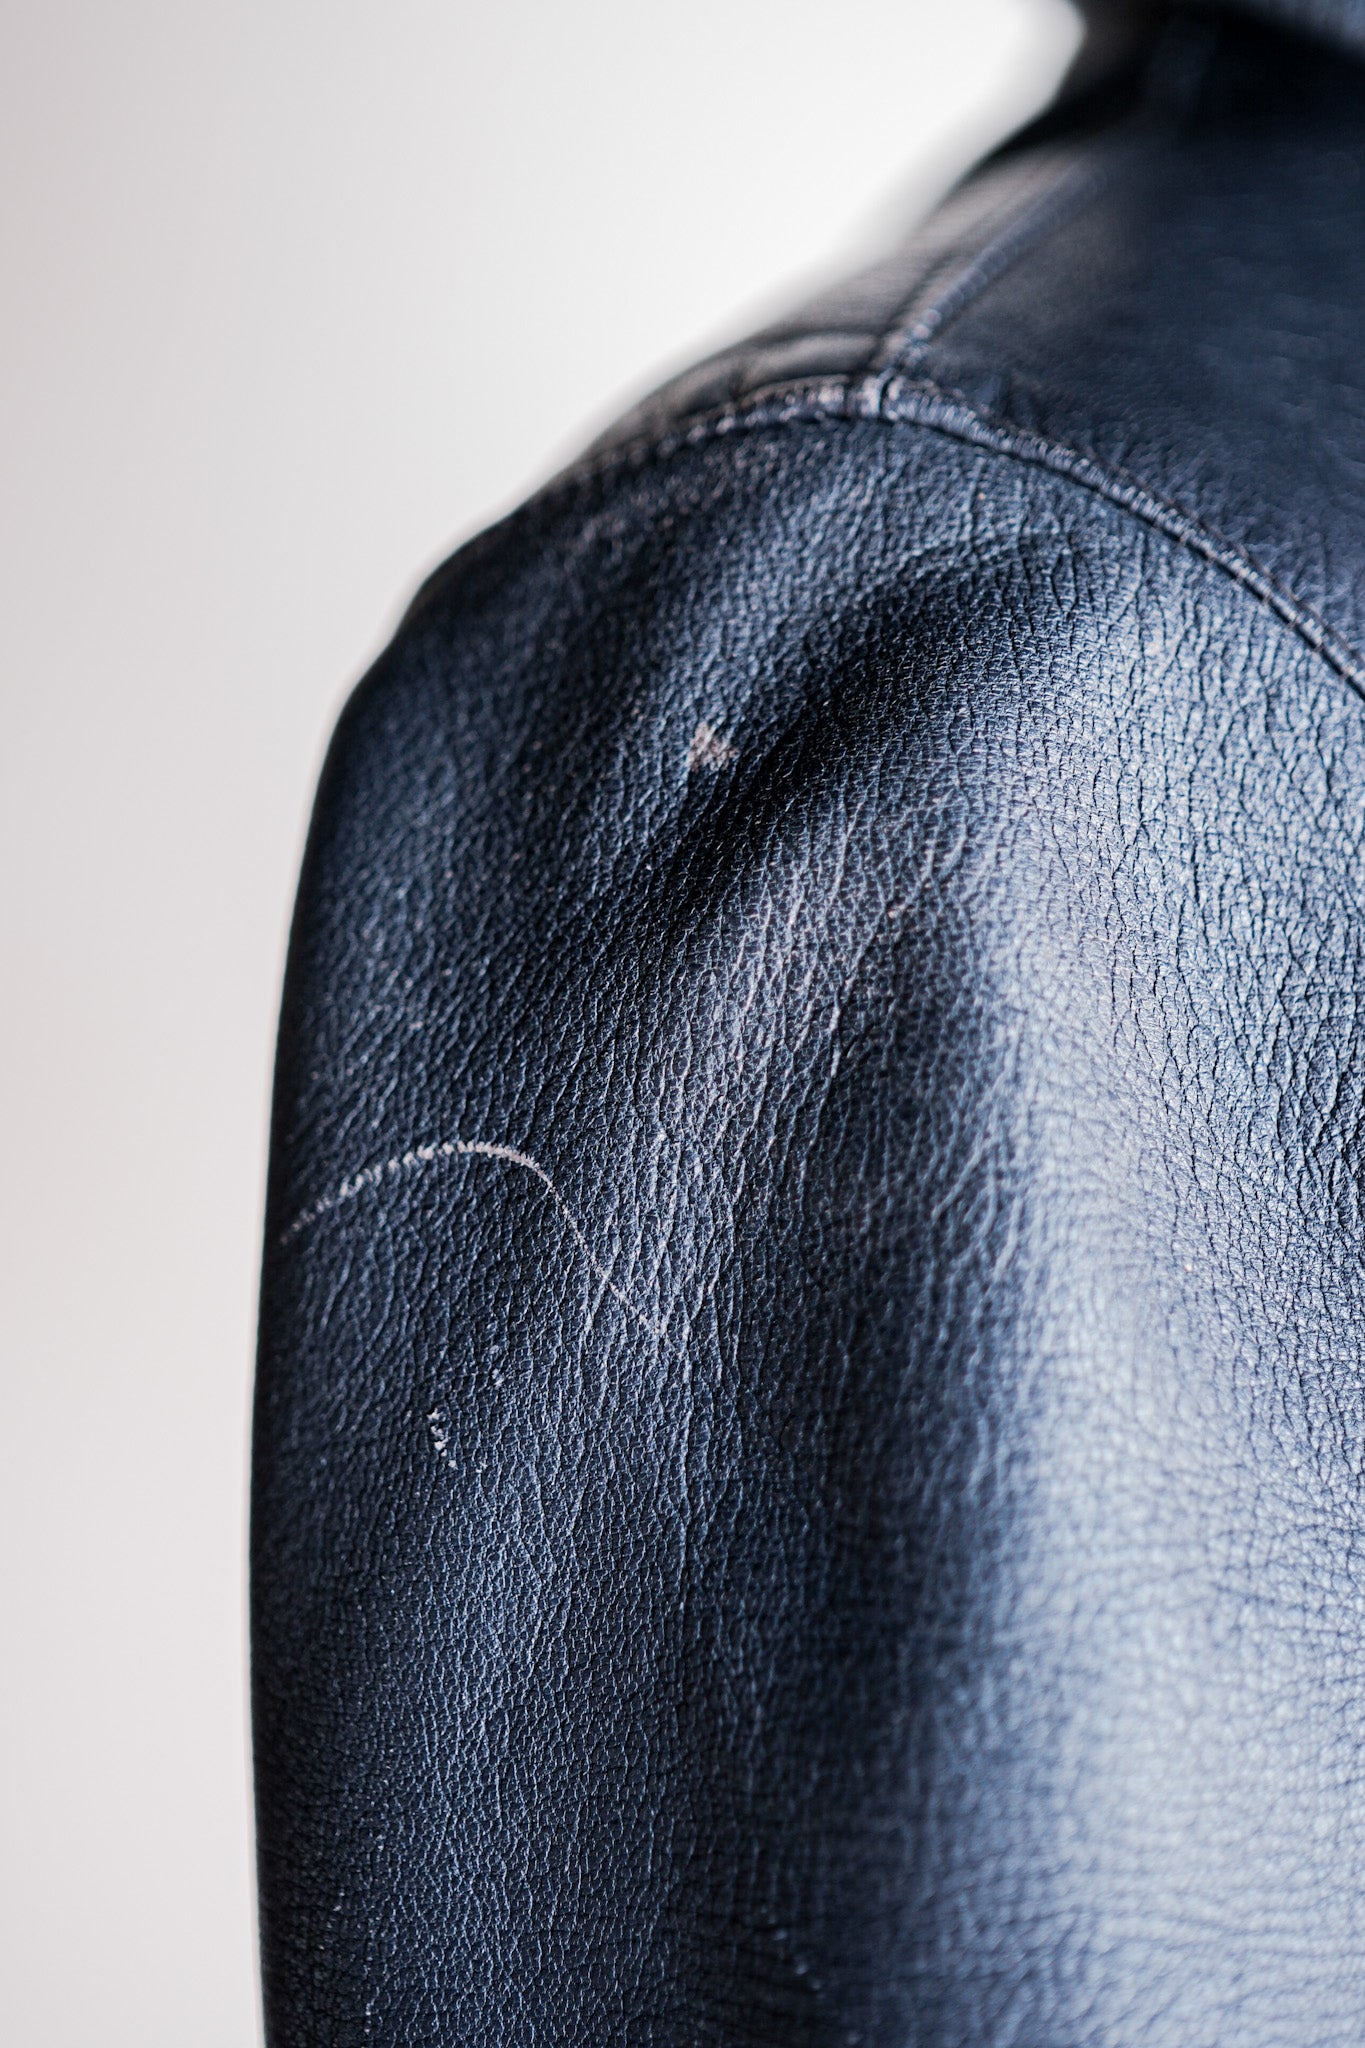 [~ 60 년대] 서독 에어스 타입 파일럿 가죽 재킷 "초기 유형"